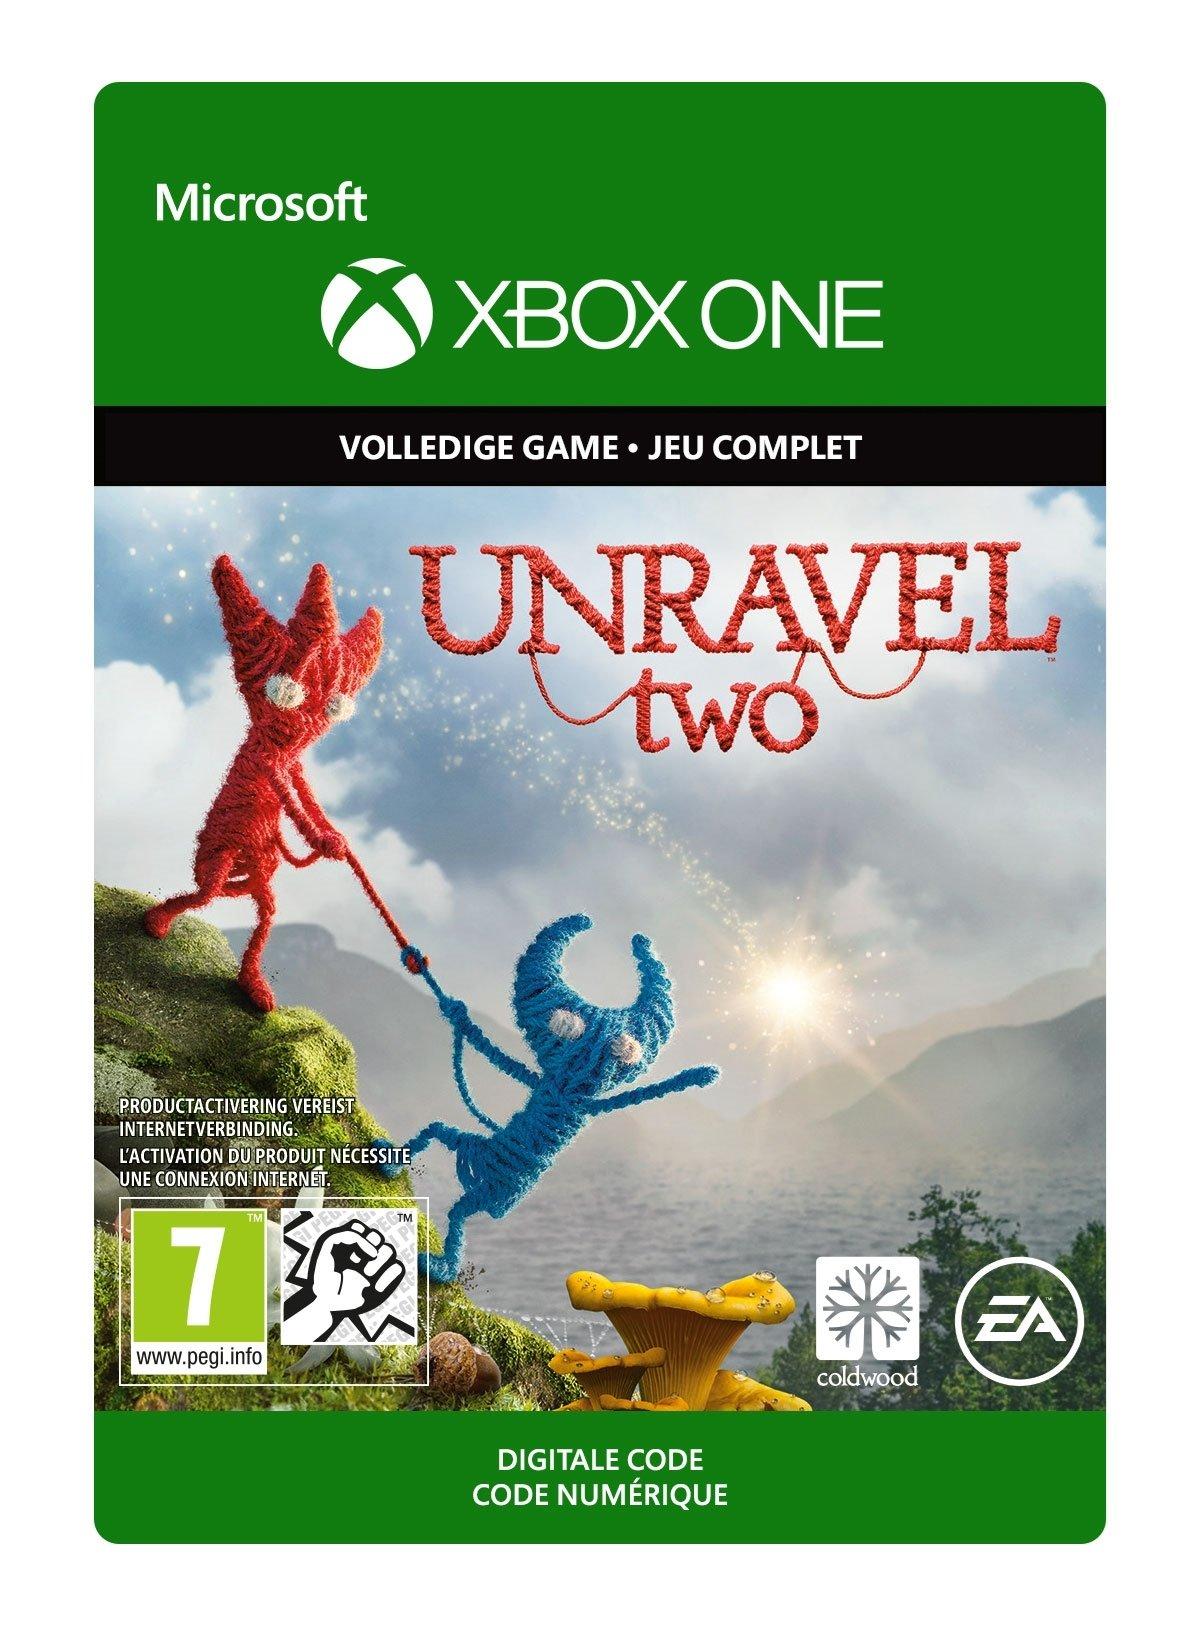 Unravel 2 - Xbox One - Game | G3Q-00487 (e6c7509b-a0f4-894a-ab7e-0187d63486c3)